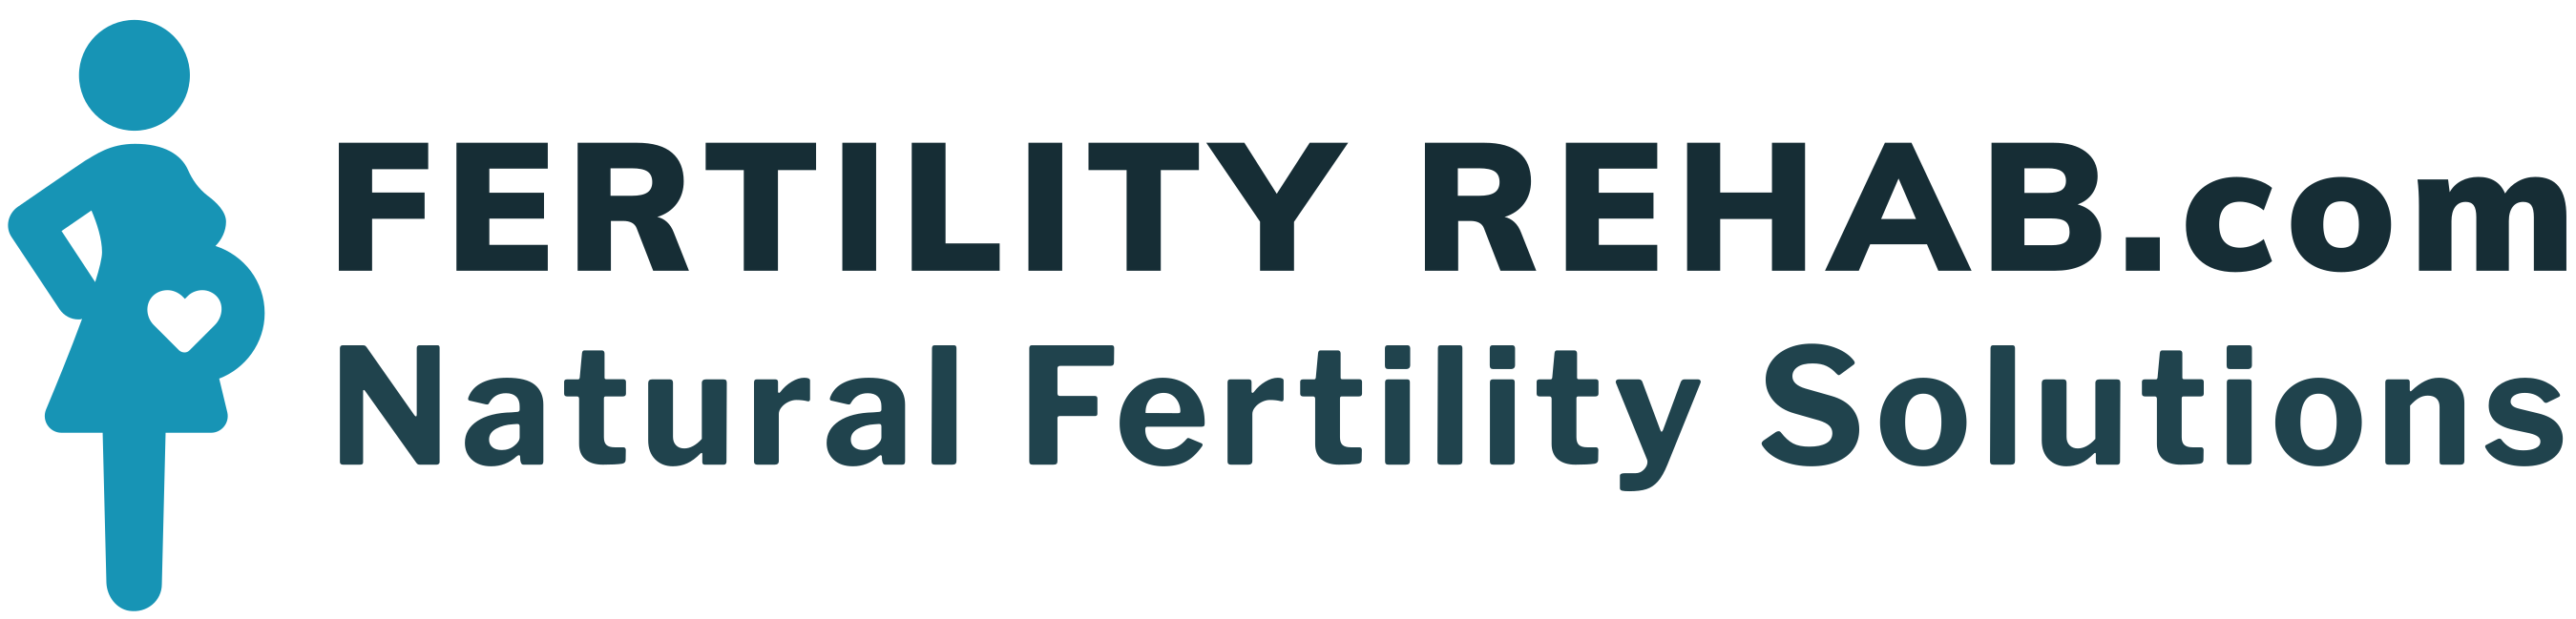 Fertility Rehab - Natural Fertility Treatment Programs